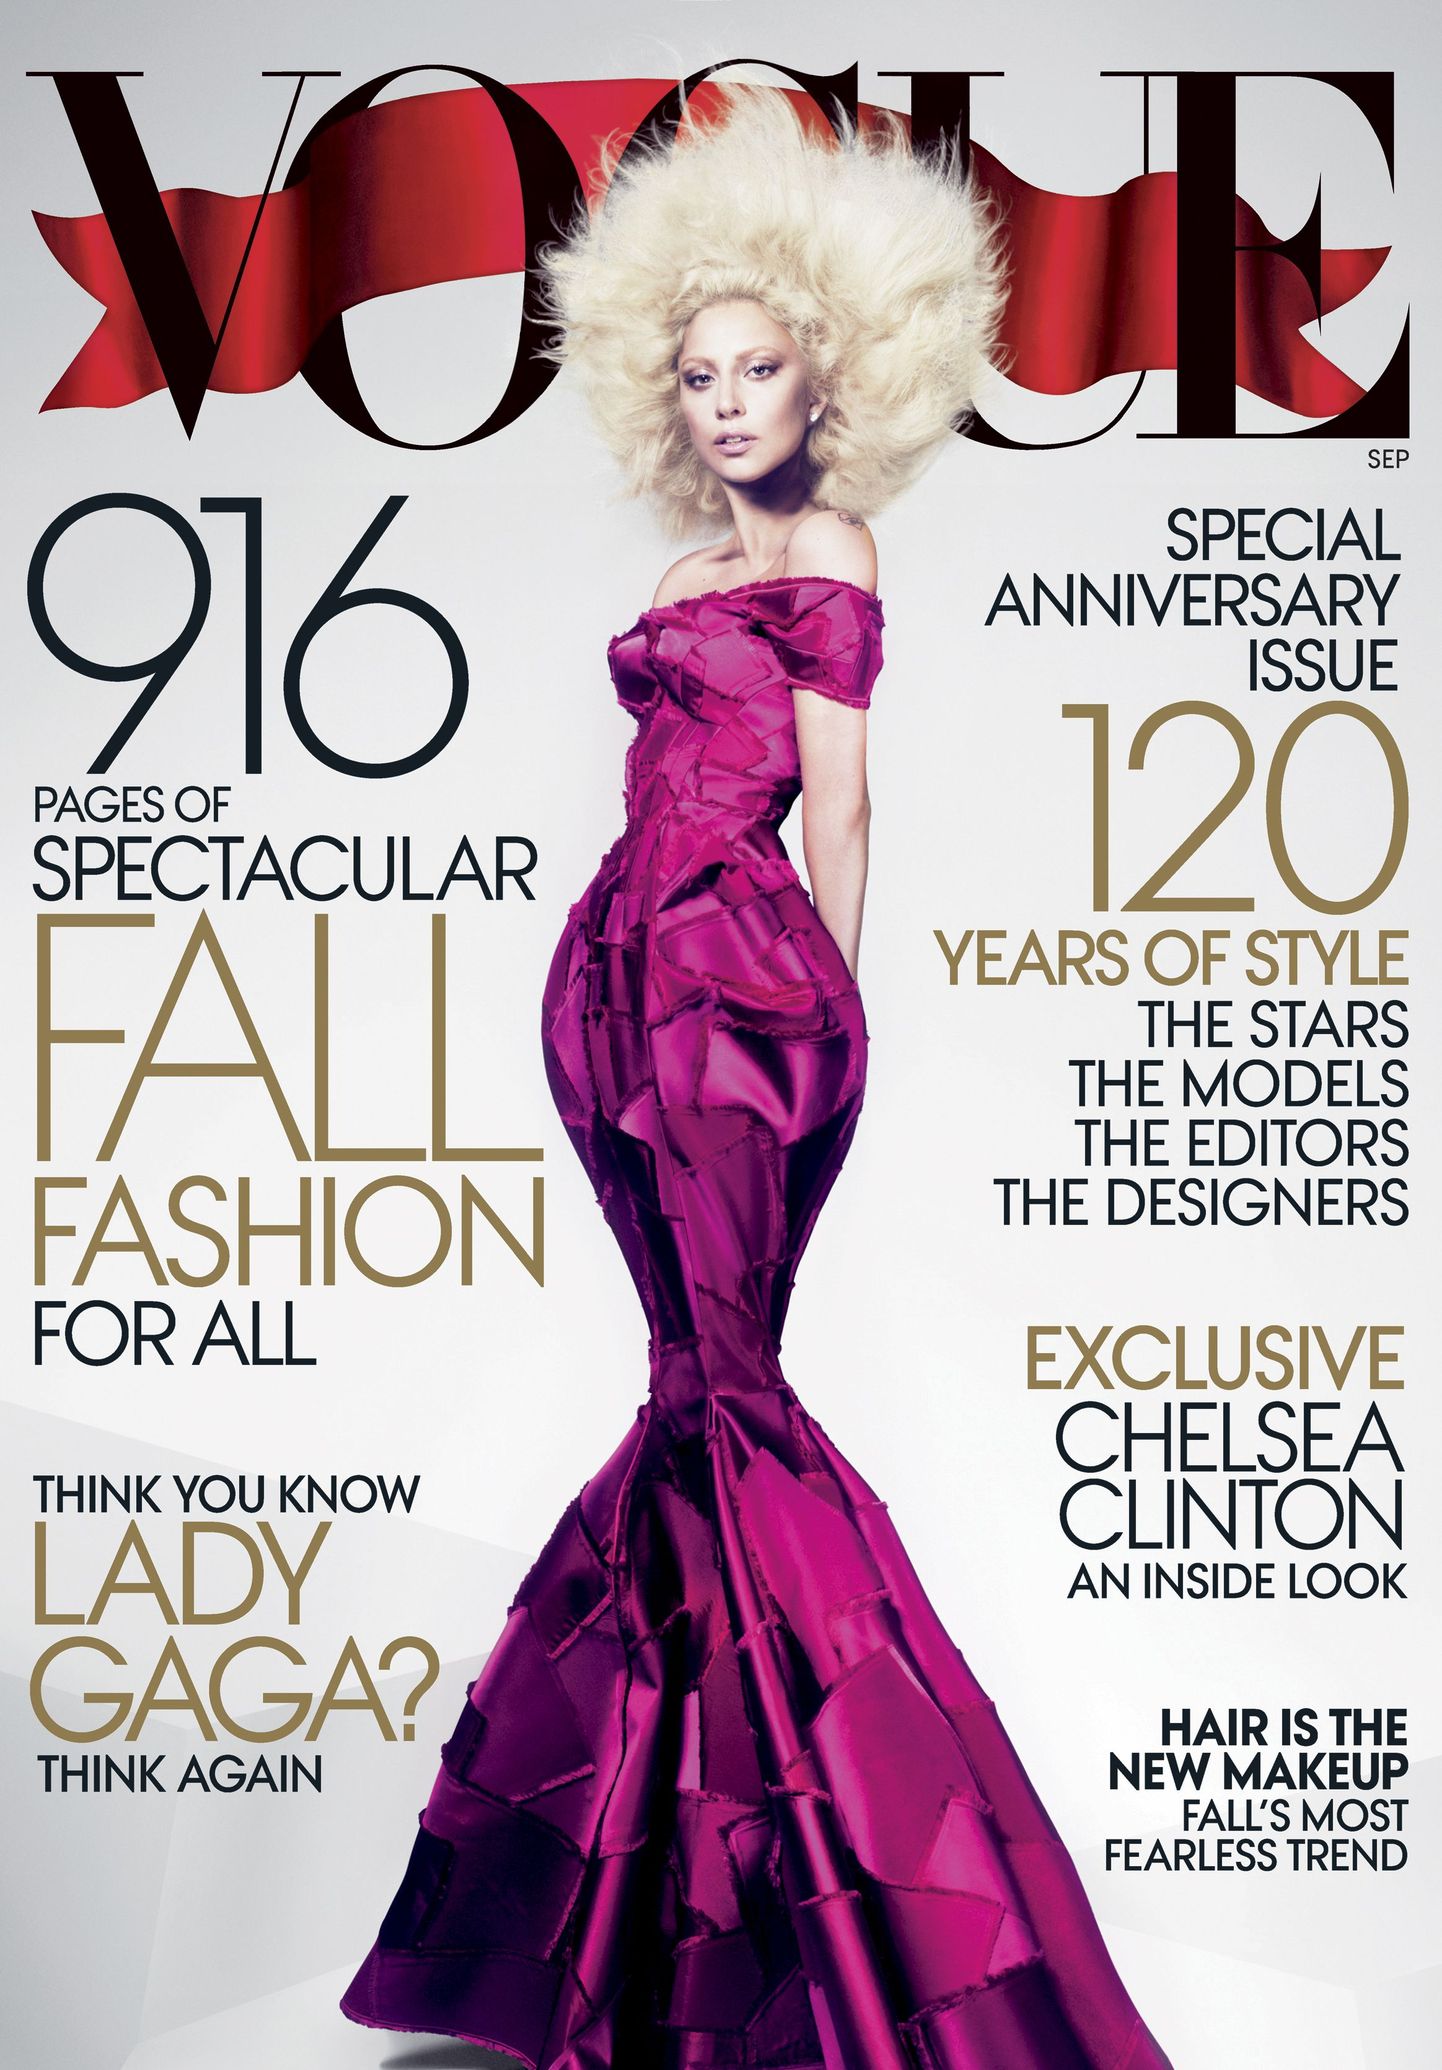 Ajakirja Vogue esikaas, millel poseerib laupäeval Eestis esinev Lady Gaga.